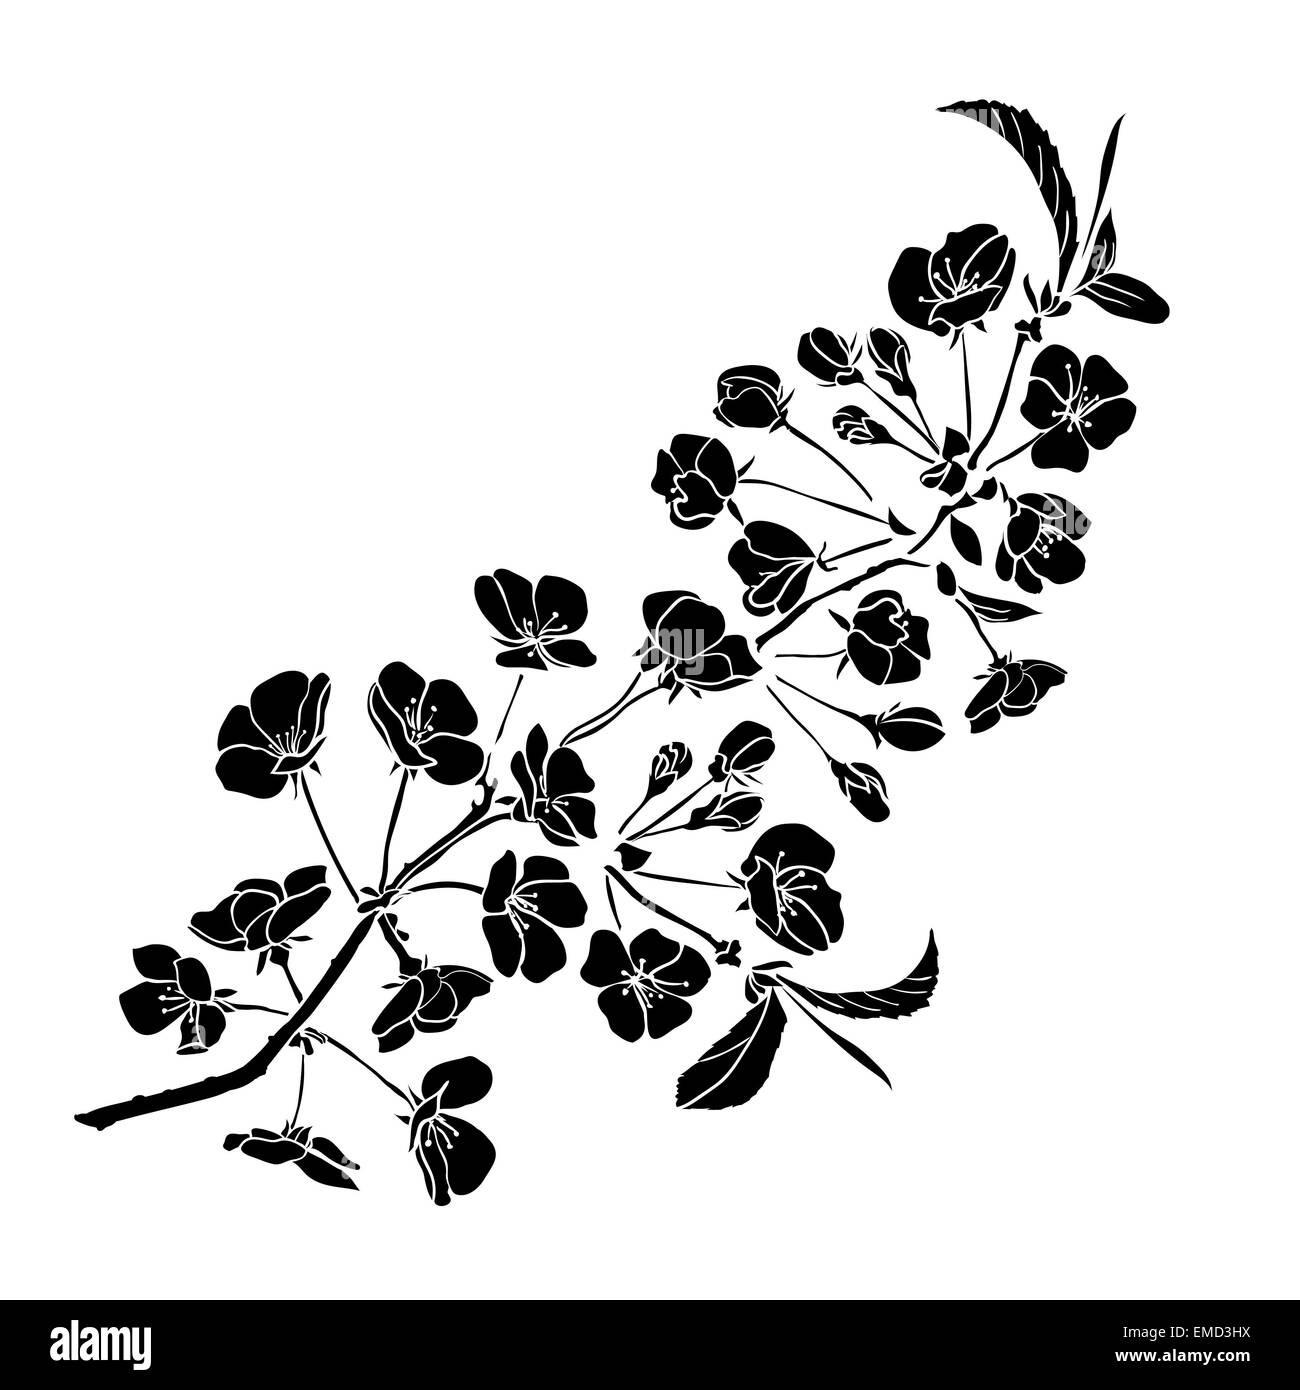 Sakura rameau en fleurs. Vector illustration. Contour noir Banque D'Images